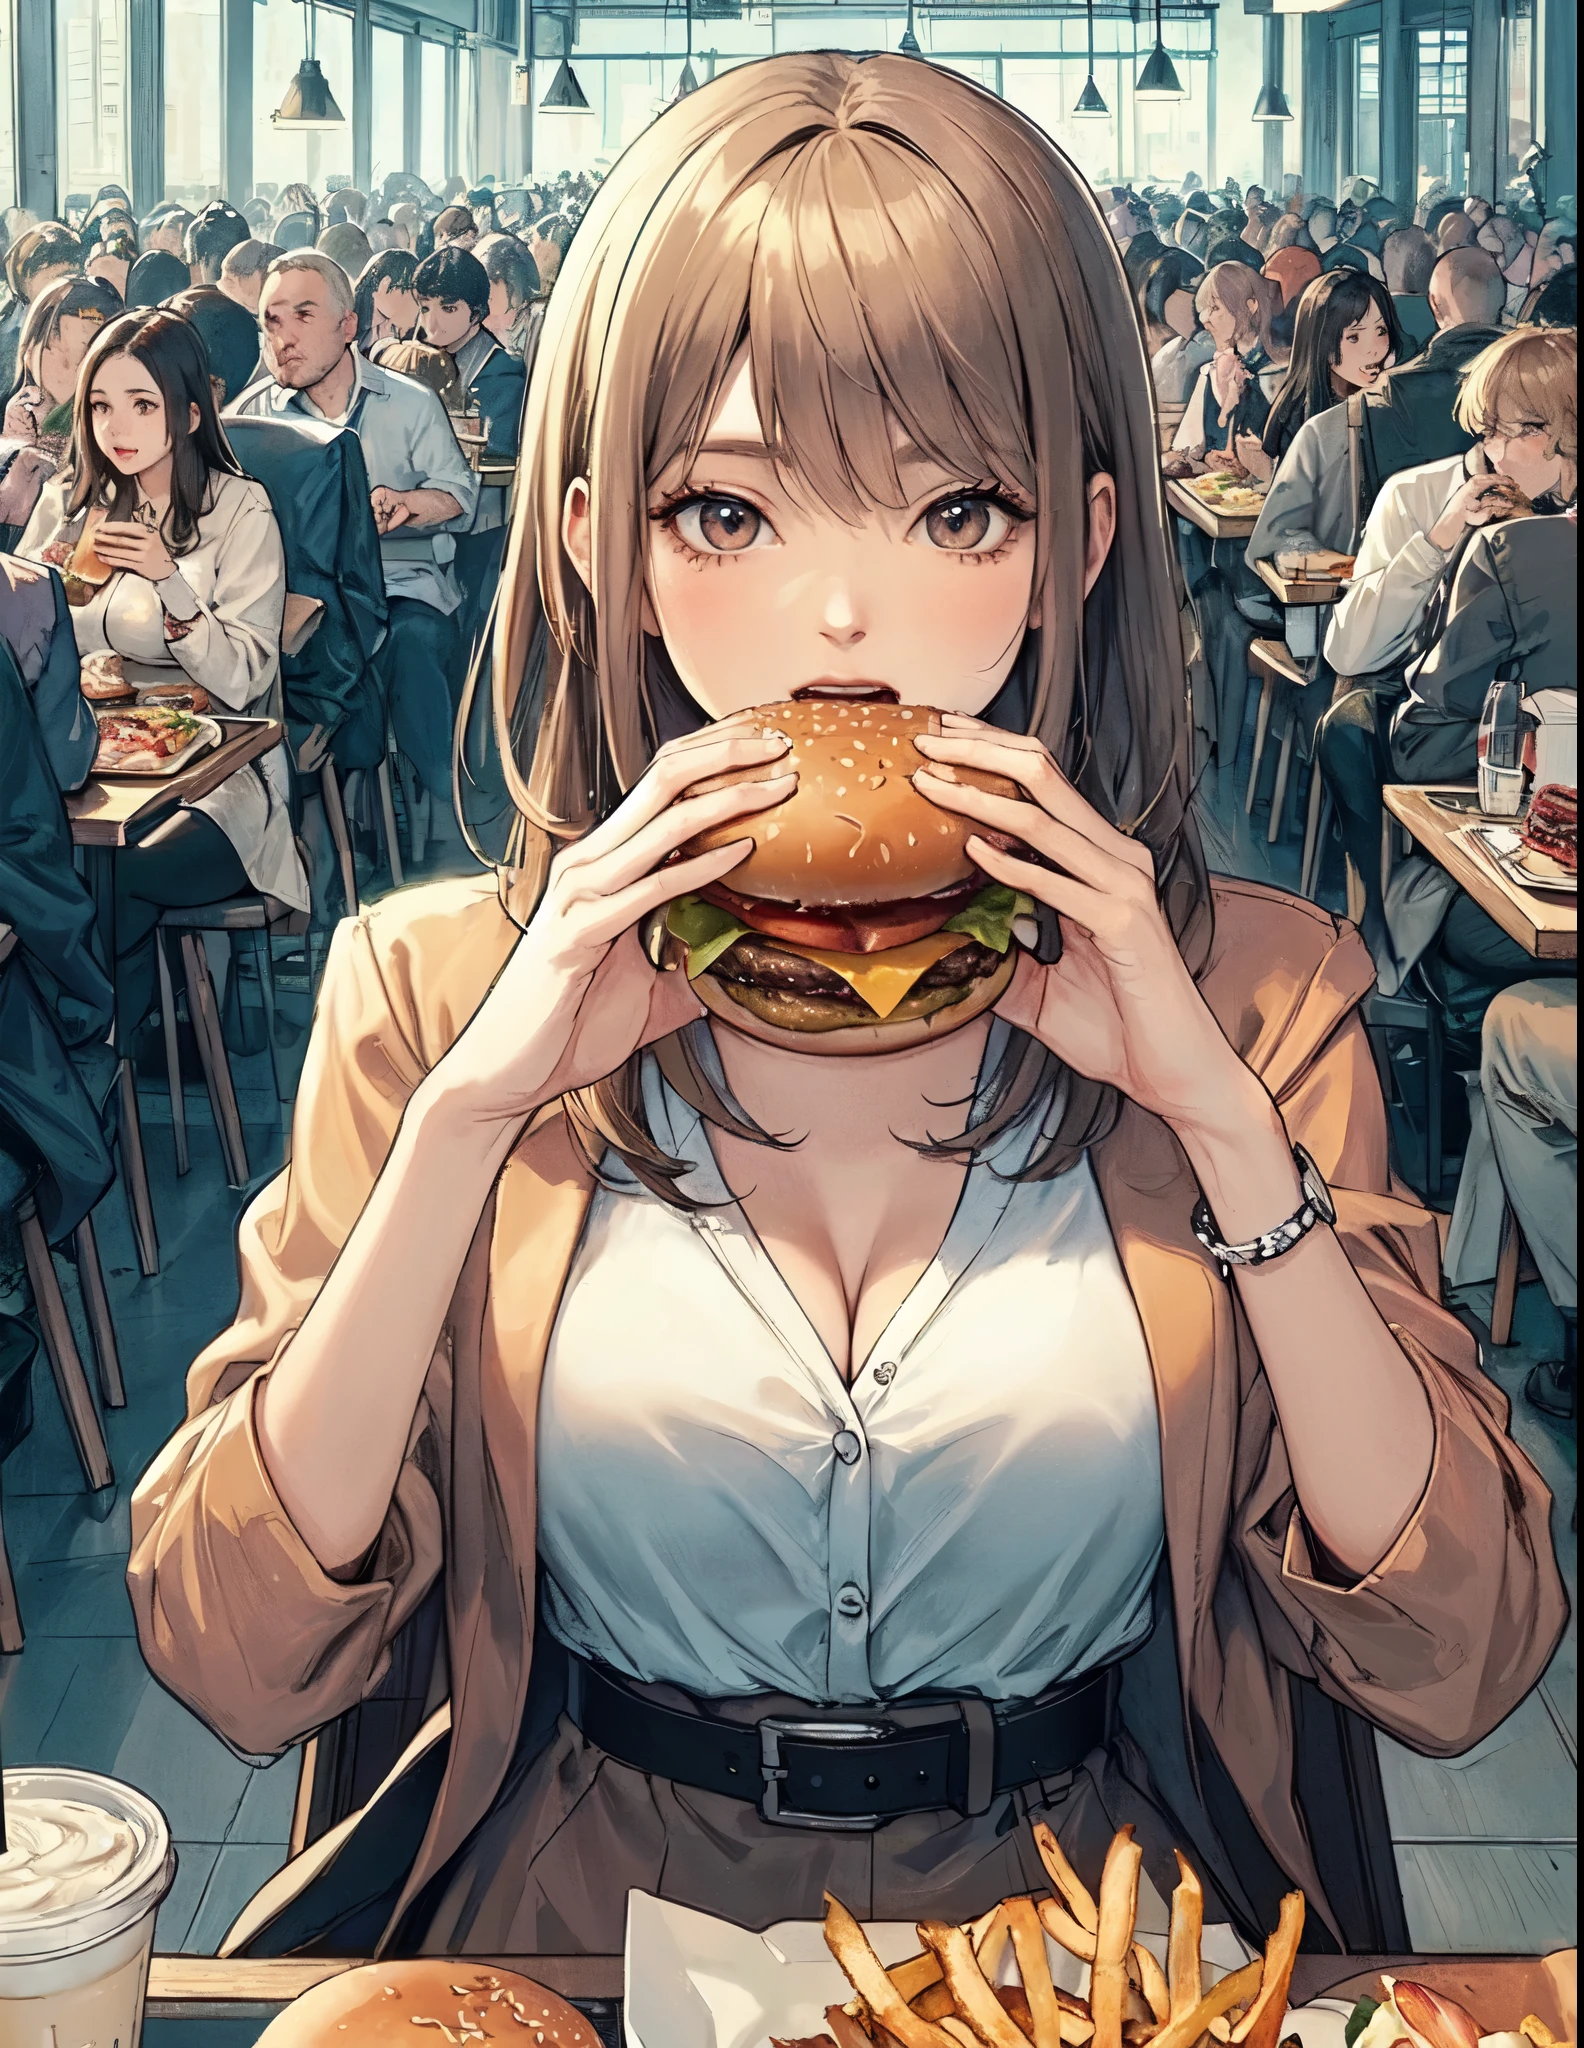 여성 1명만, 테이블에 앉아, (햄버거를 들고) 양손에, taking a 큰 bite, 세련된 복장, 성숙한 여성, /(베이지색 머리/) 앞머리, (입을 벌리다) 큰, (이:0.8), (걸작 최고의 품질:1.2) 섬세한 그림 매우 상세한, large breasts 부서지다 (큰 hamburger) 부서지다 (캐주얼 레스토랑) 실내, 패스트 푸드, 붐비는, 자세한 배경